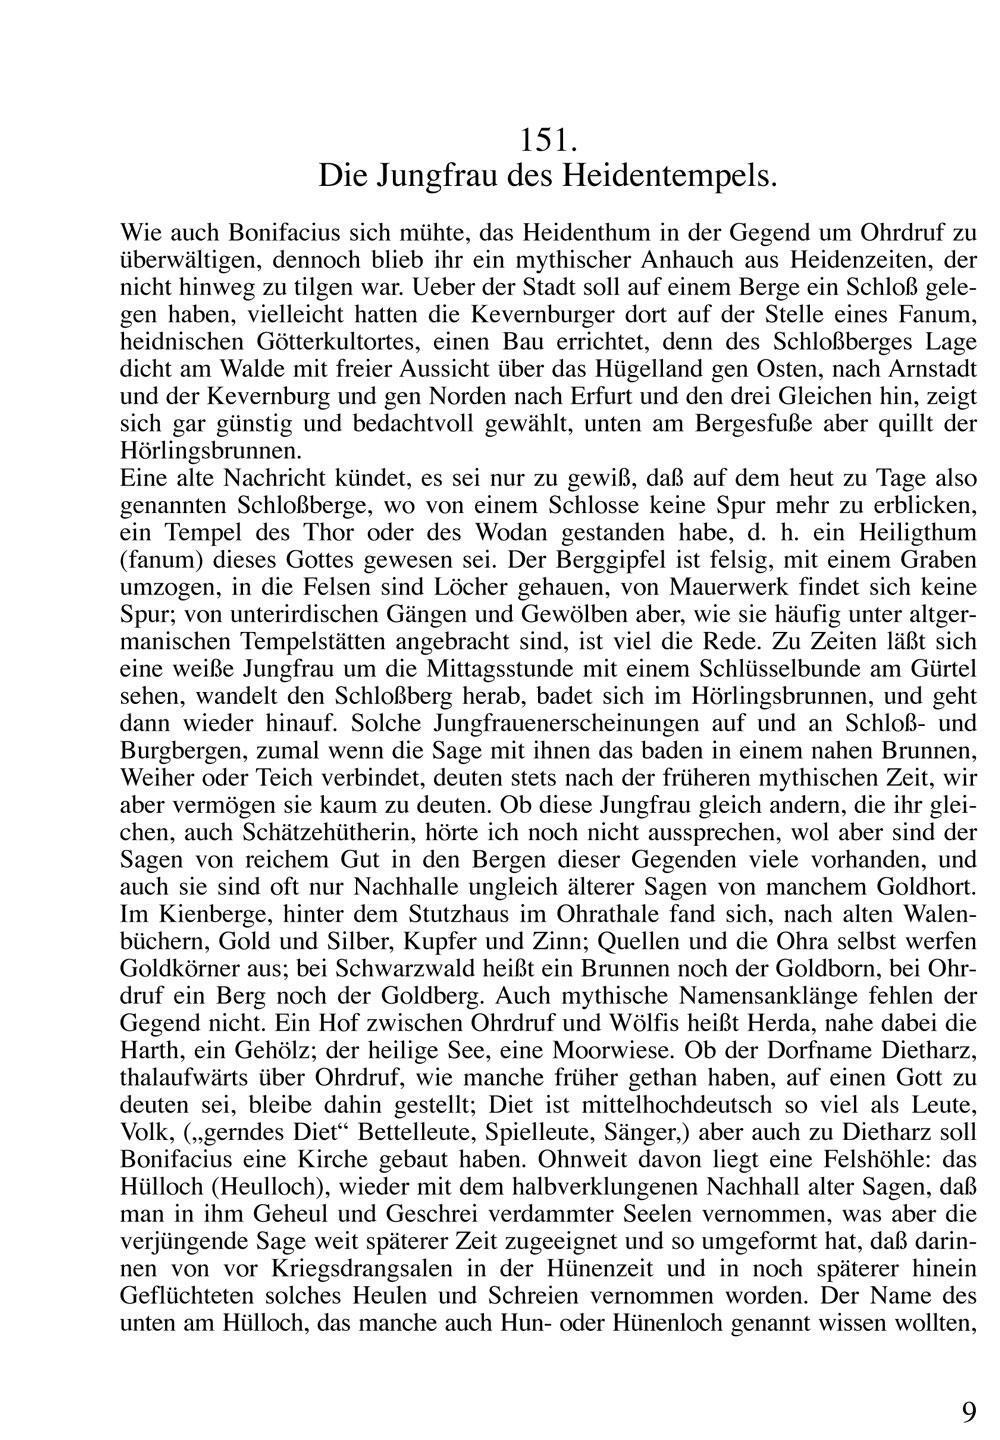 Bild: 9783936030082 | Thüringer Sagenbuch 2 | Ludwig Bechstein | Buch | Deutsch | 2014